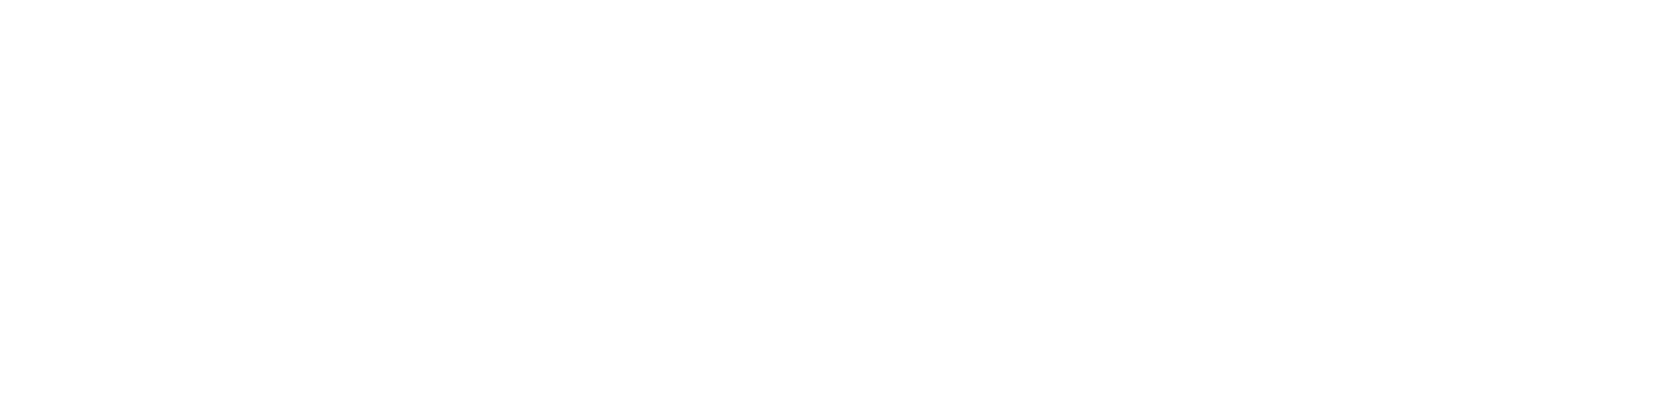 Ч/б КЛ изображение зональных зерен бадделеита, смонтированных в эпоксидной смоле. Сшивка из серии изображений.